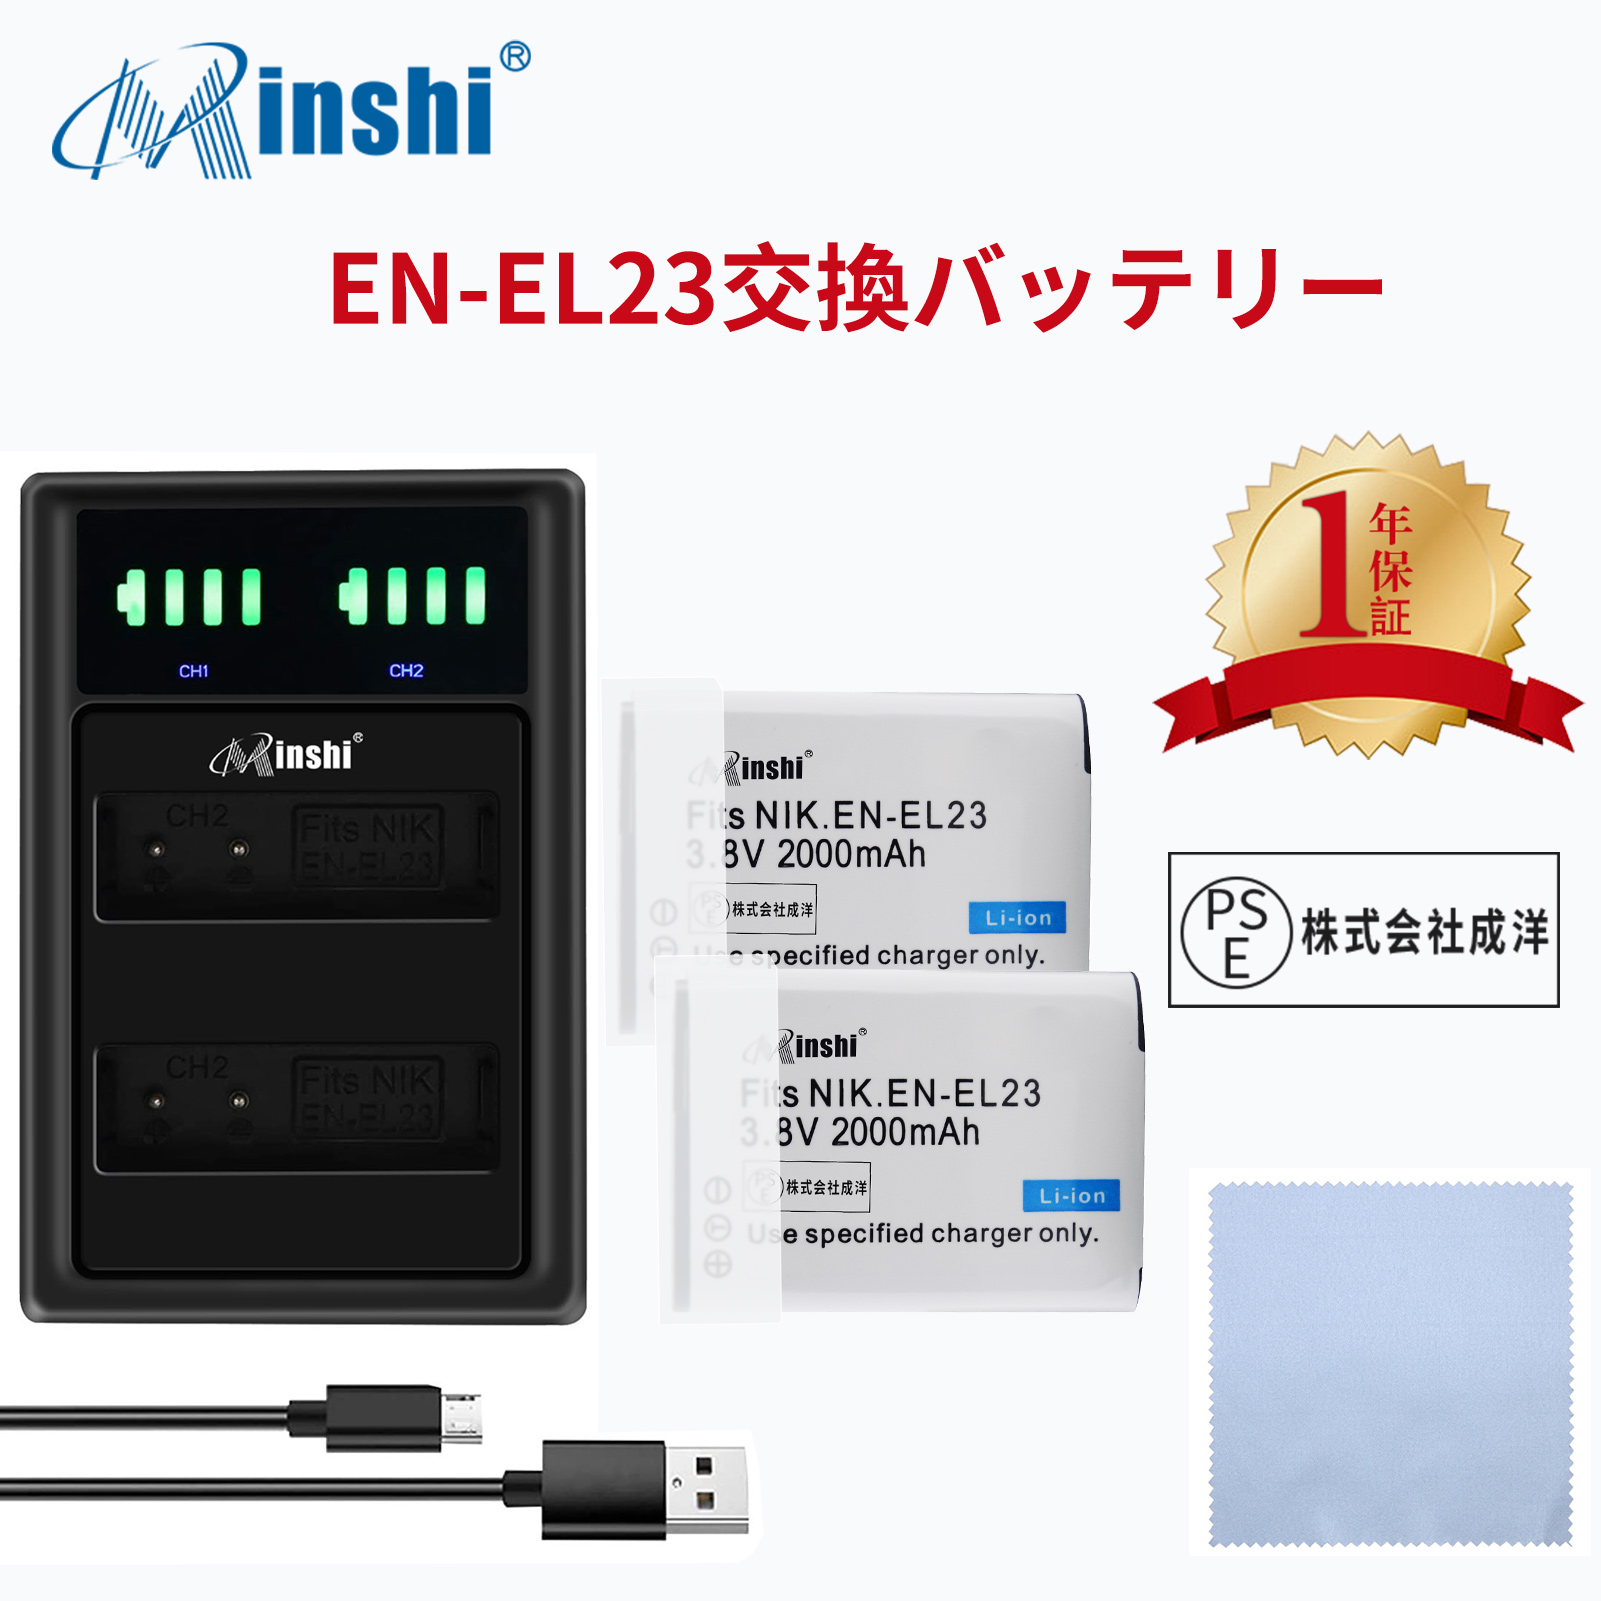 【セット】 minshi NIKON EN-EL23 対応 EN-EL23 互換バッテリー 2000mAh PSE認定済 高品質交換用バッテリー【2個】